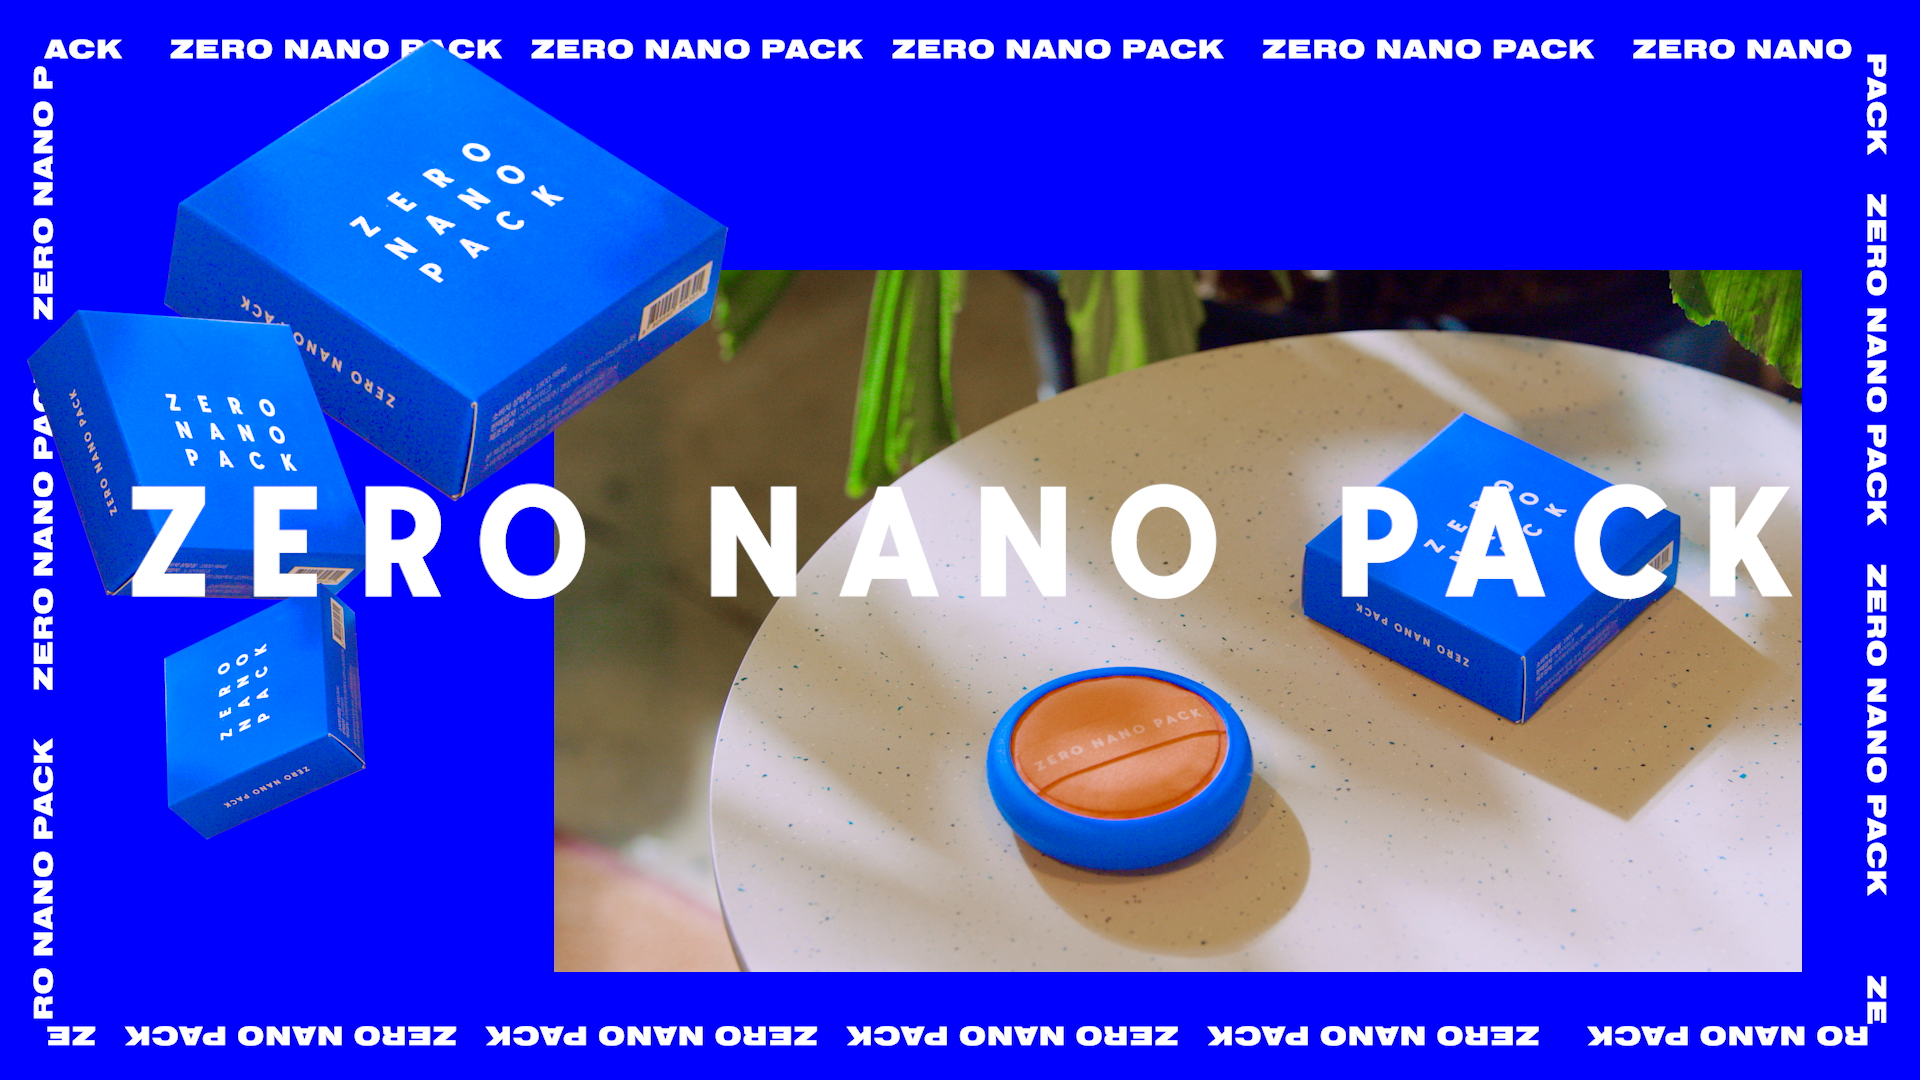 Zero Nano Pack Promotion Video